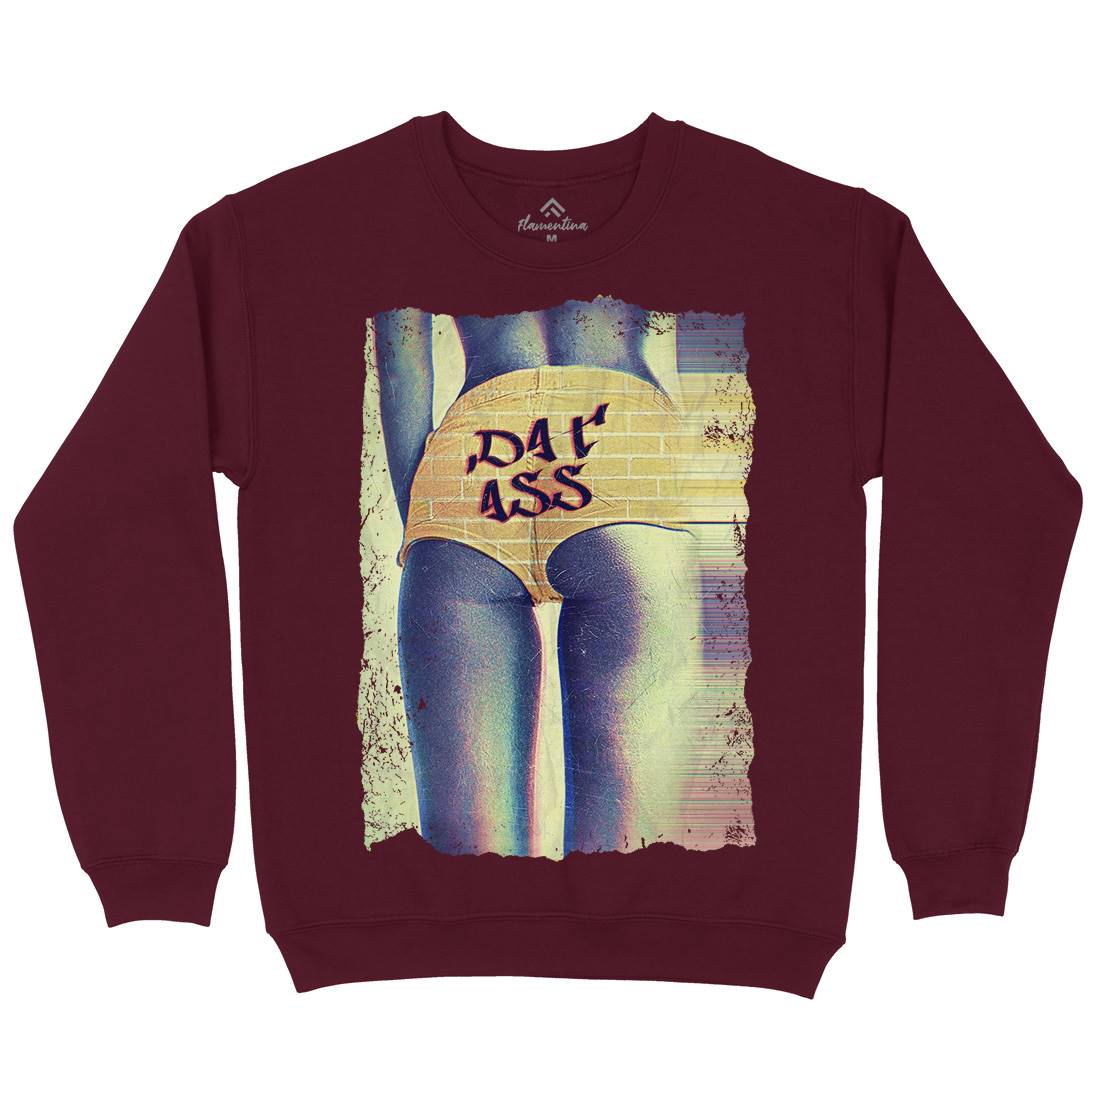 Dat Ass Kids Crew Neck Sweatshirt Art A817